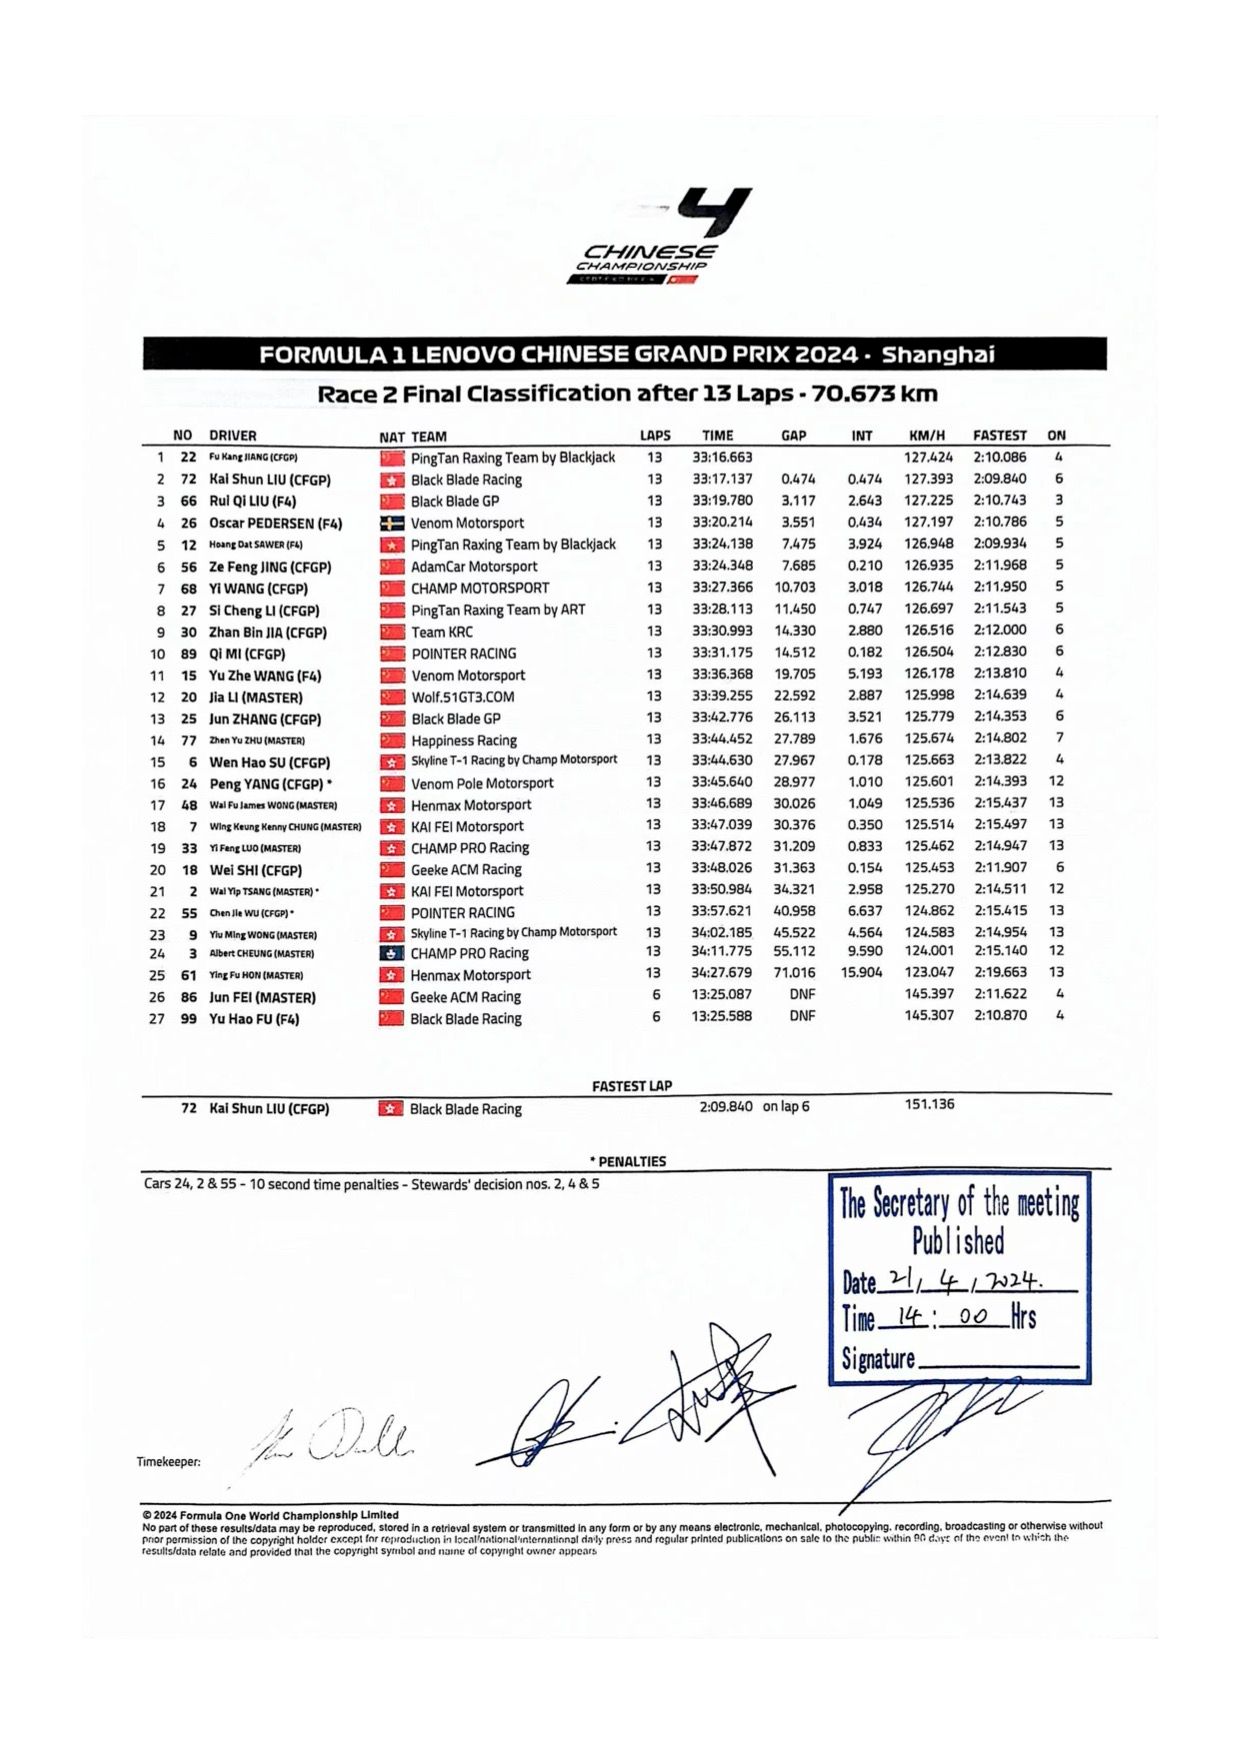 Resultados de la carrera 2 del primer evento del Campeonato Chino FIA F4